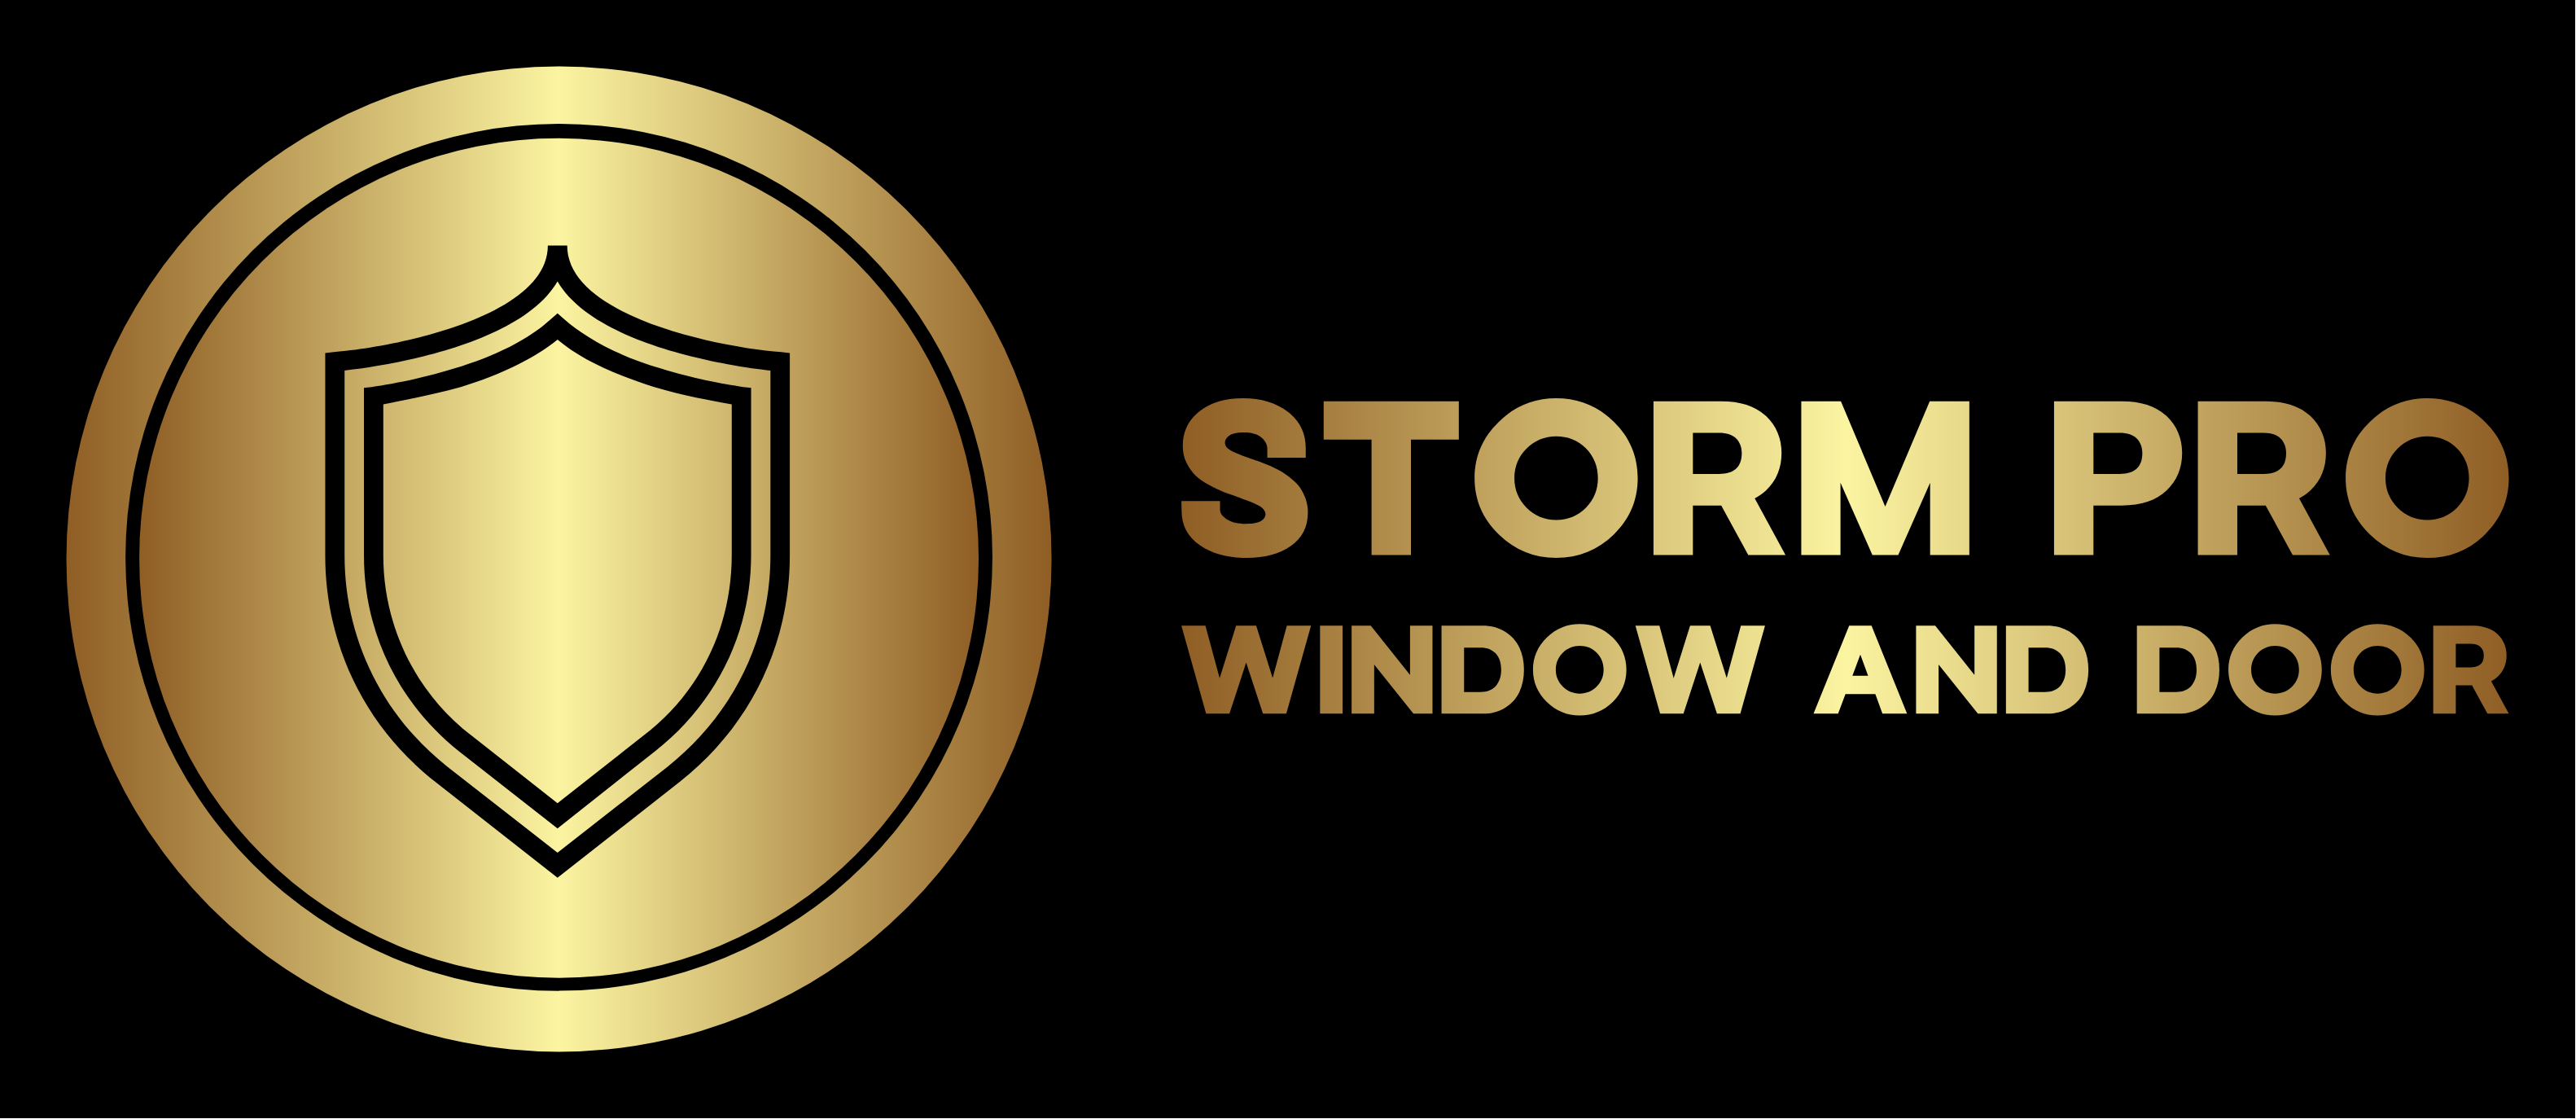 Storm Pro Window and Door Logo